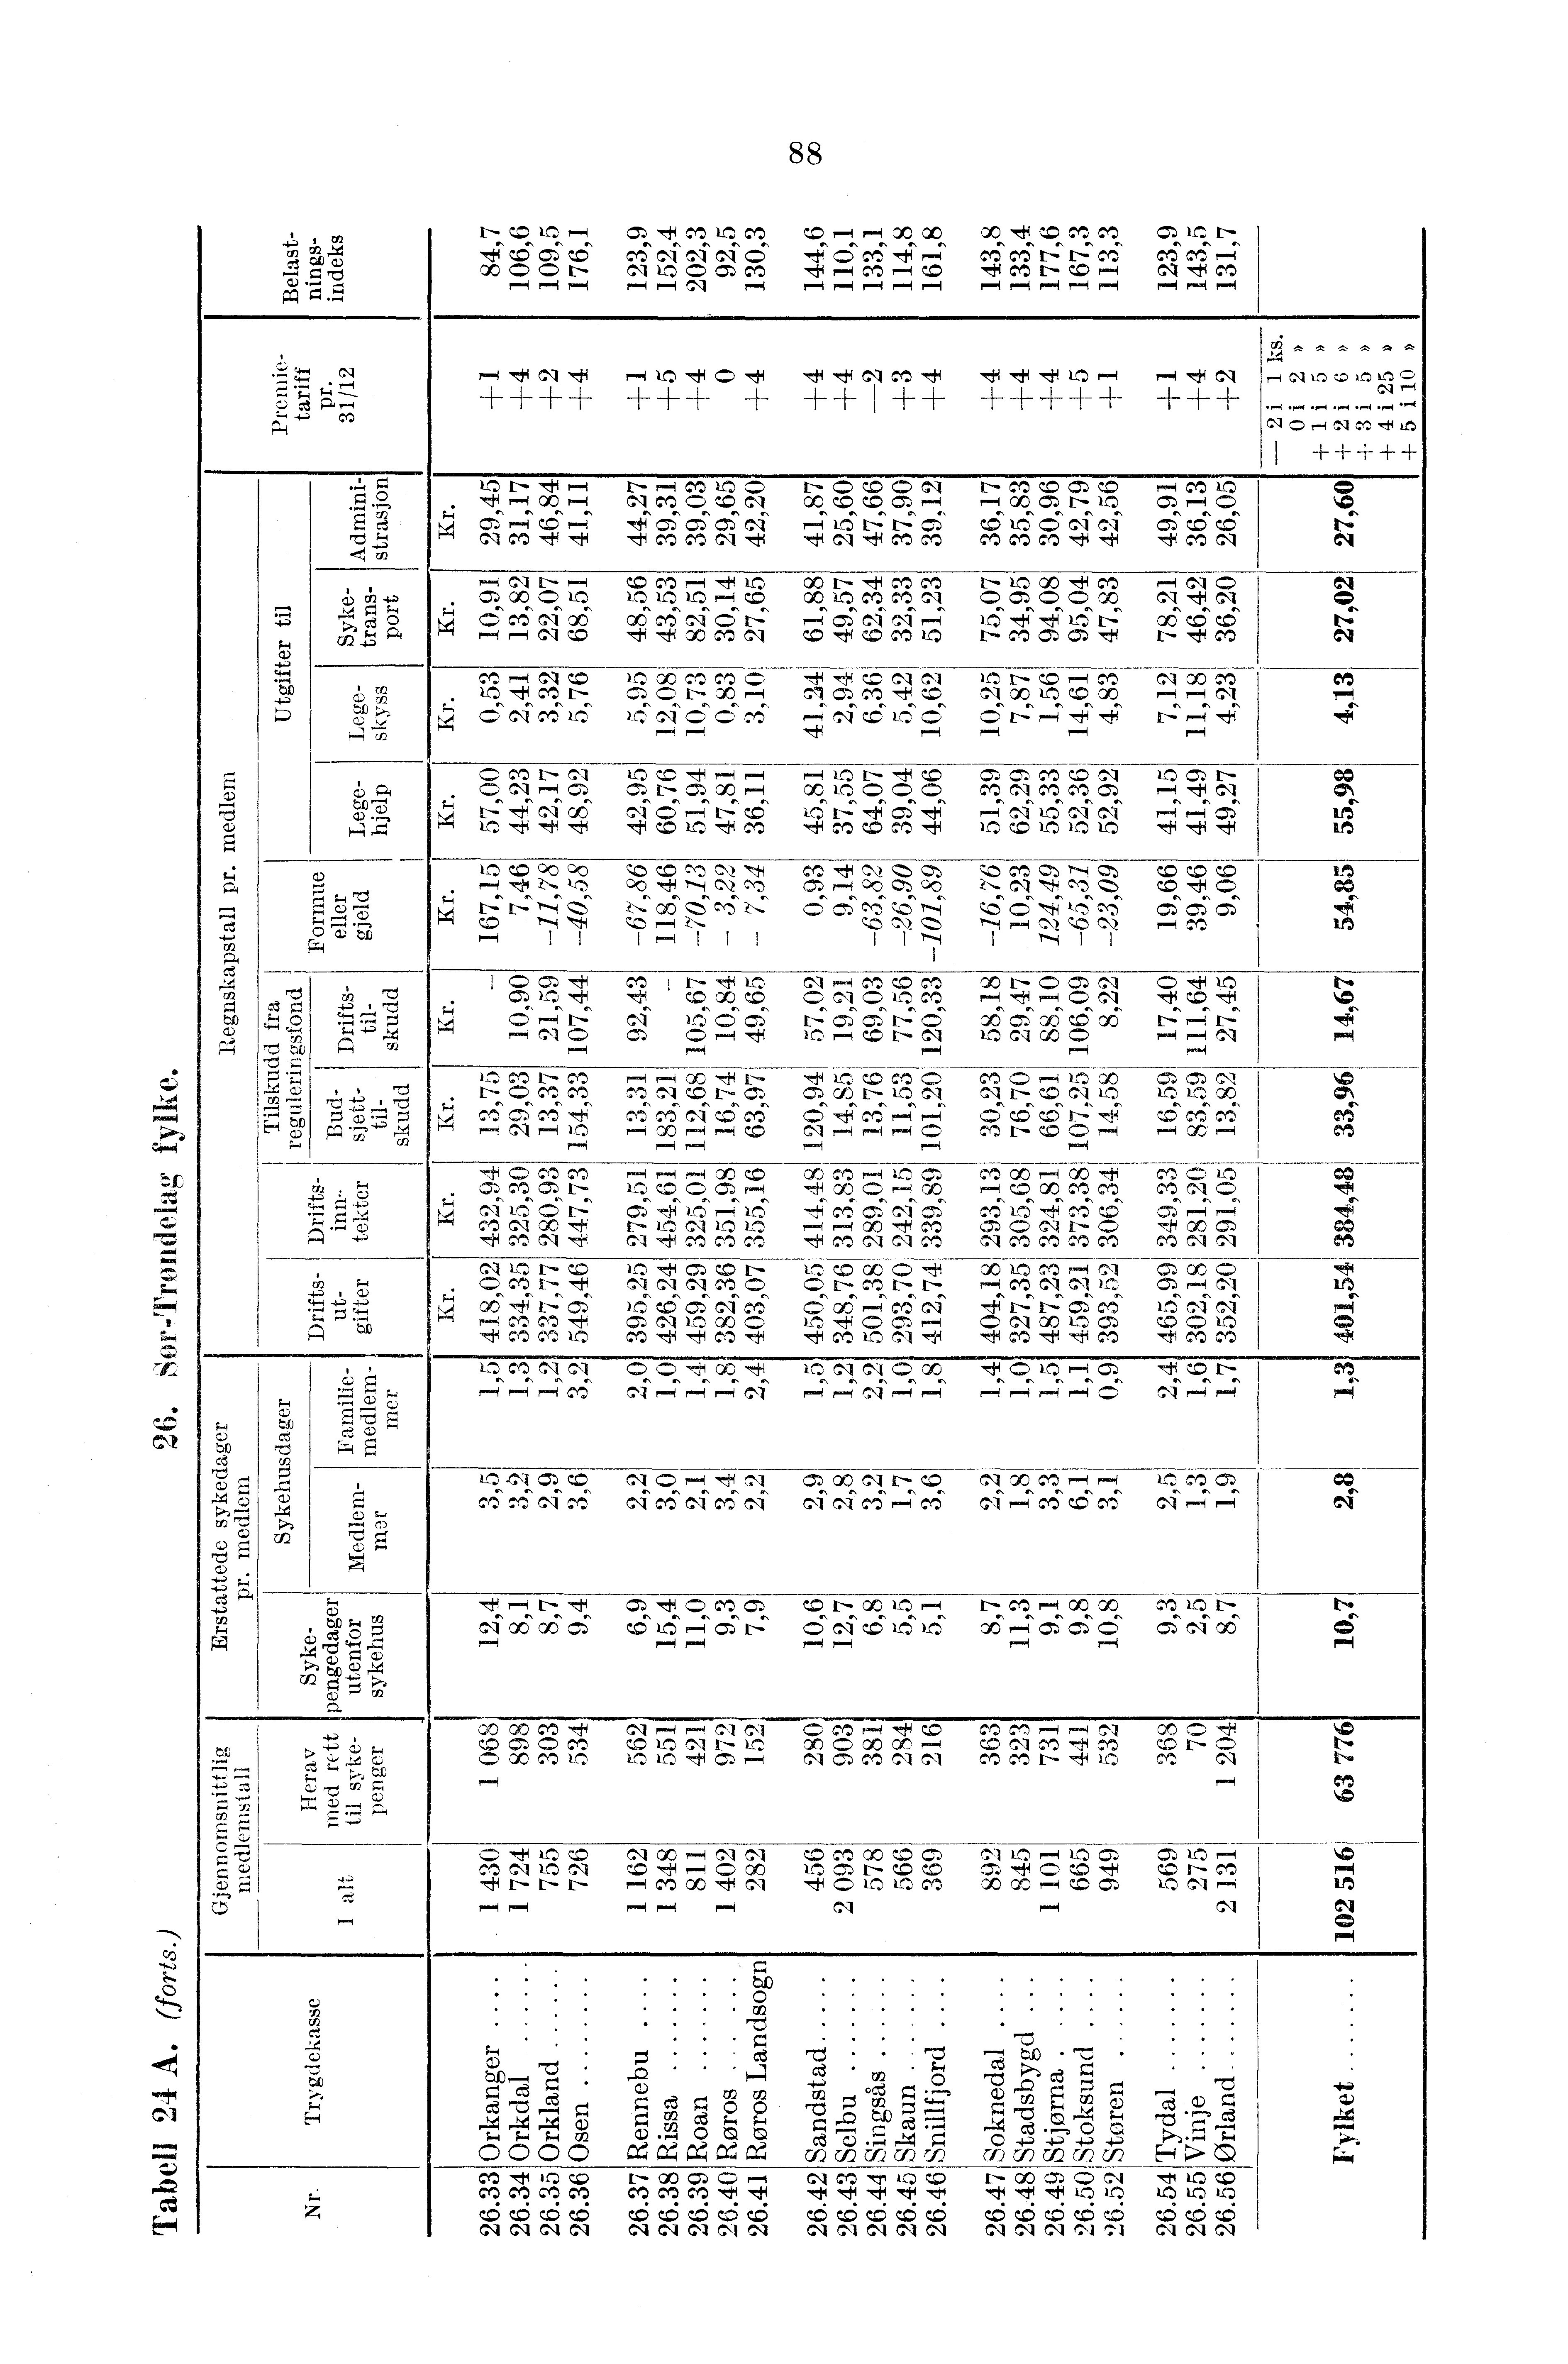 tc) m,1.4 CO LCD COcz) CD 00 00 C3', la Tec.) mcei't=r=vis 0000N CO N CD riqco r i r.1 r.1 r. r i rr, rr,474 `4 N,,,f 01,71q.t,t7NO,d,f '4"dic9M,f ++++ +++ +4-14-4- ',VI Pr 00 P. CqM71.1,1.